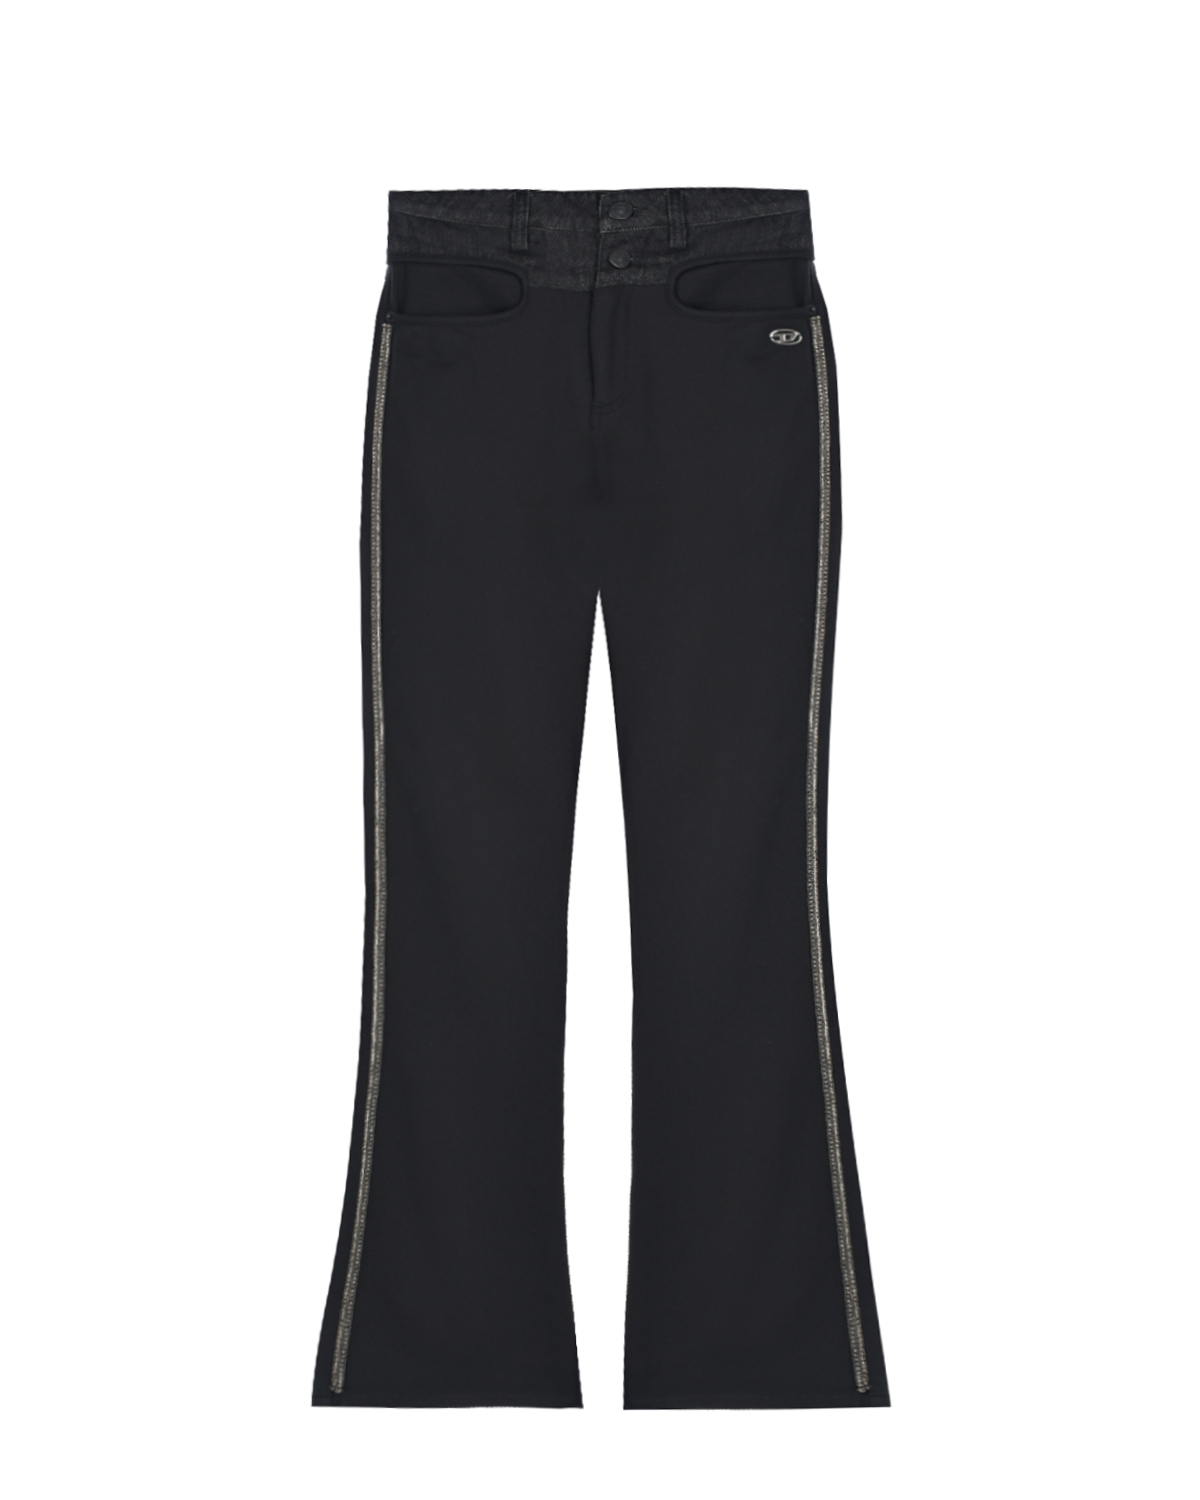 Черные брюки с лампасами из стразов Diesel детские, размер 128, цвет черный